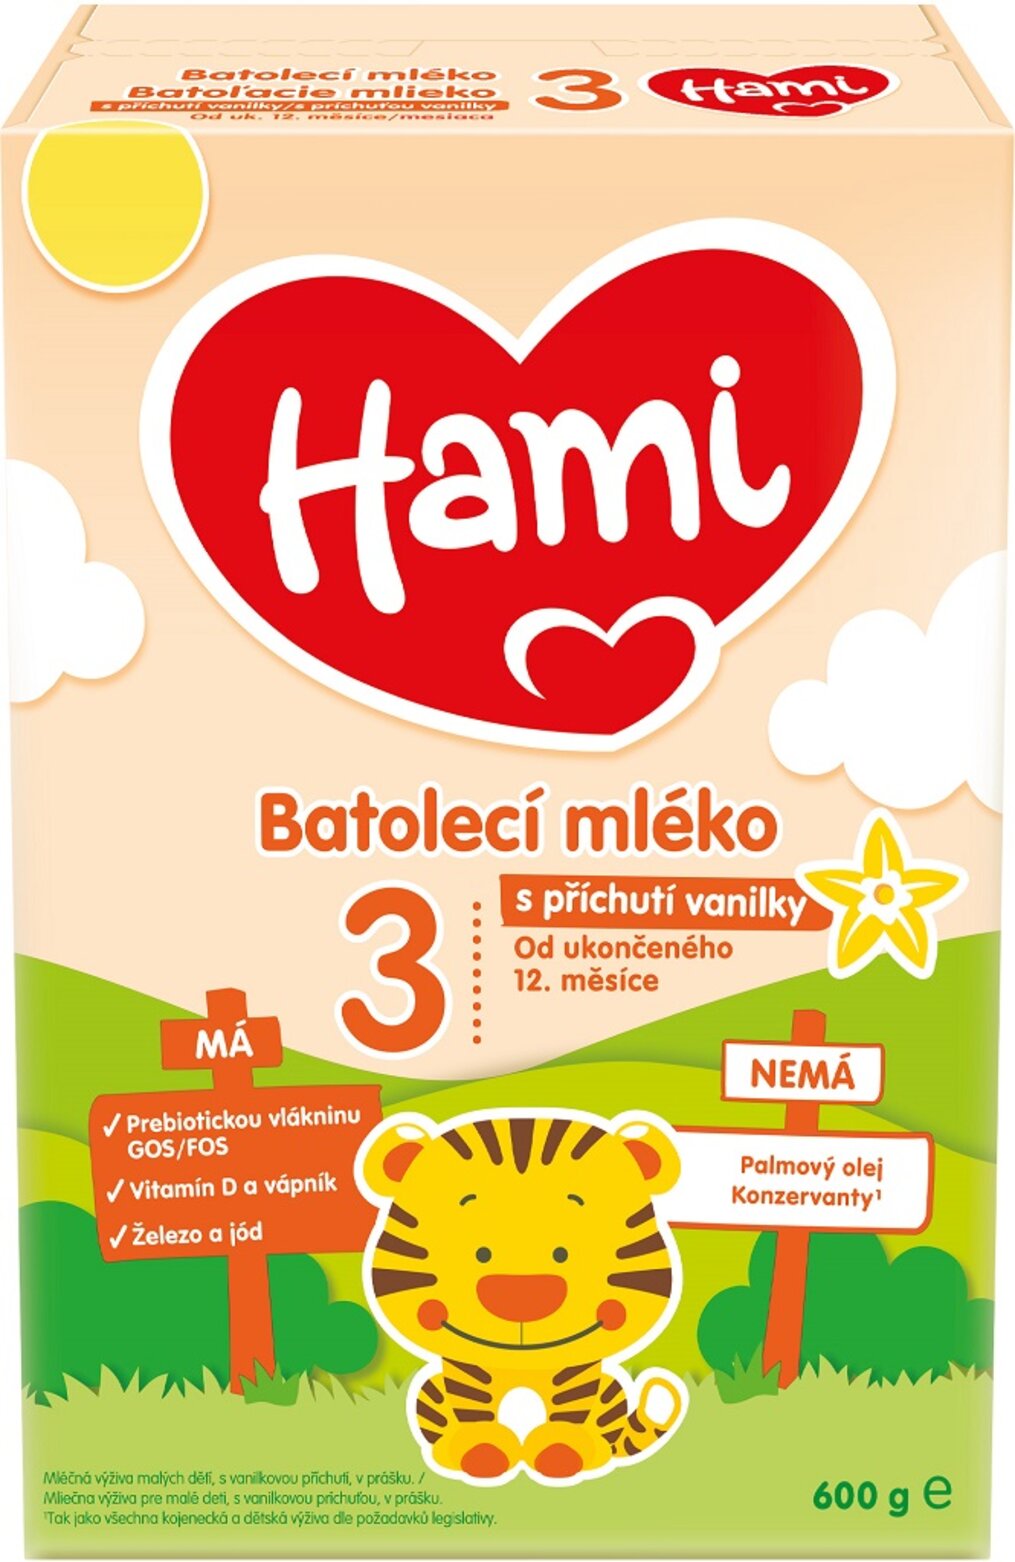 3x HAMI 3 Mlieko batoľacie s príchuťou vanilky 600 g | Predeti.sk